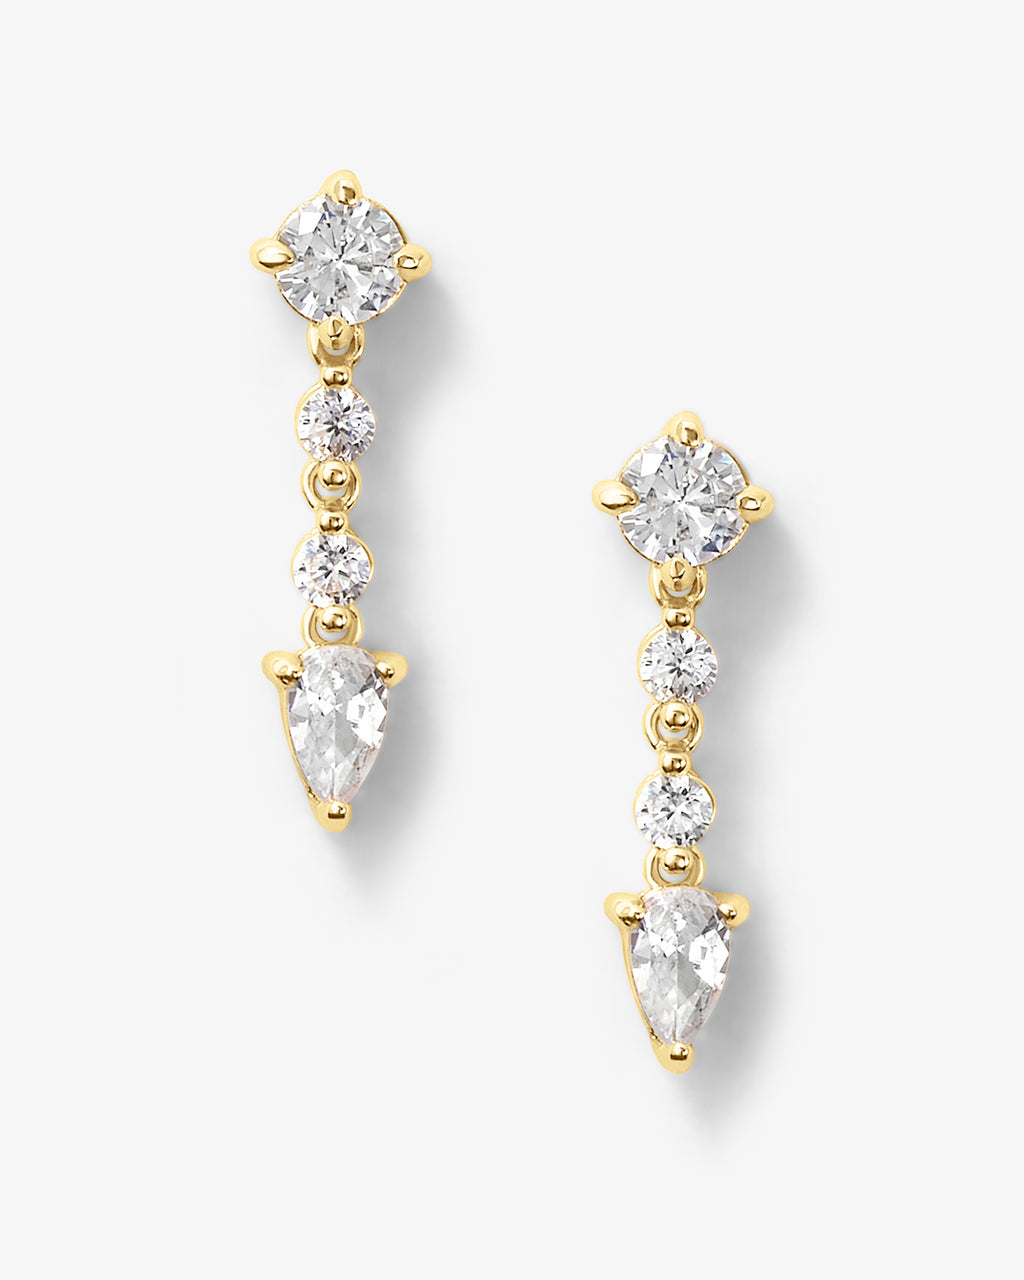 Cute Cubic Zircon 18K Gold Stud Earrings for Women Wedding Jewelry Gift |  eBay